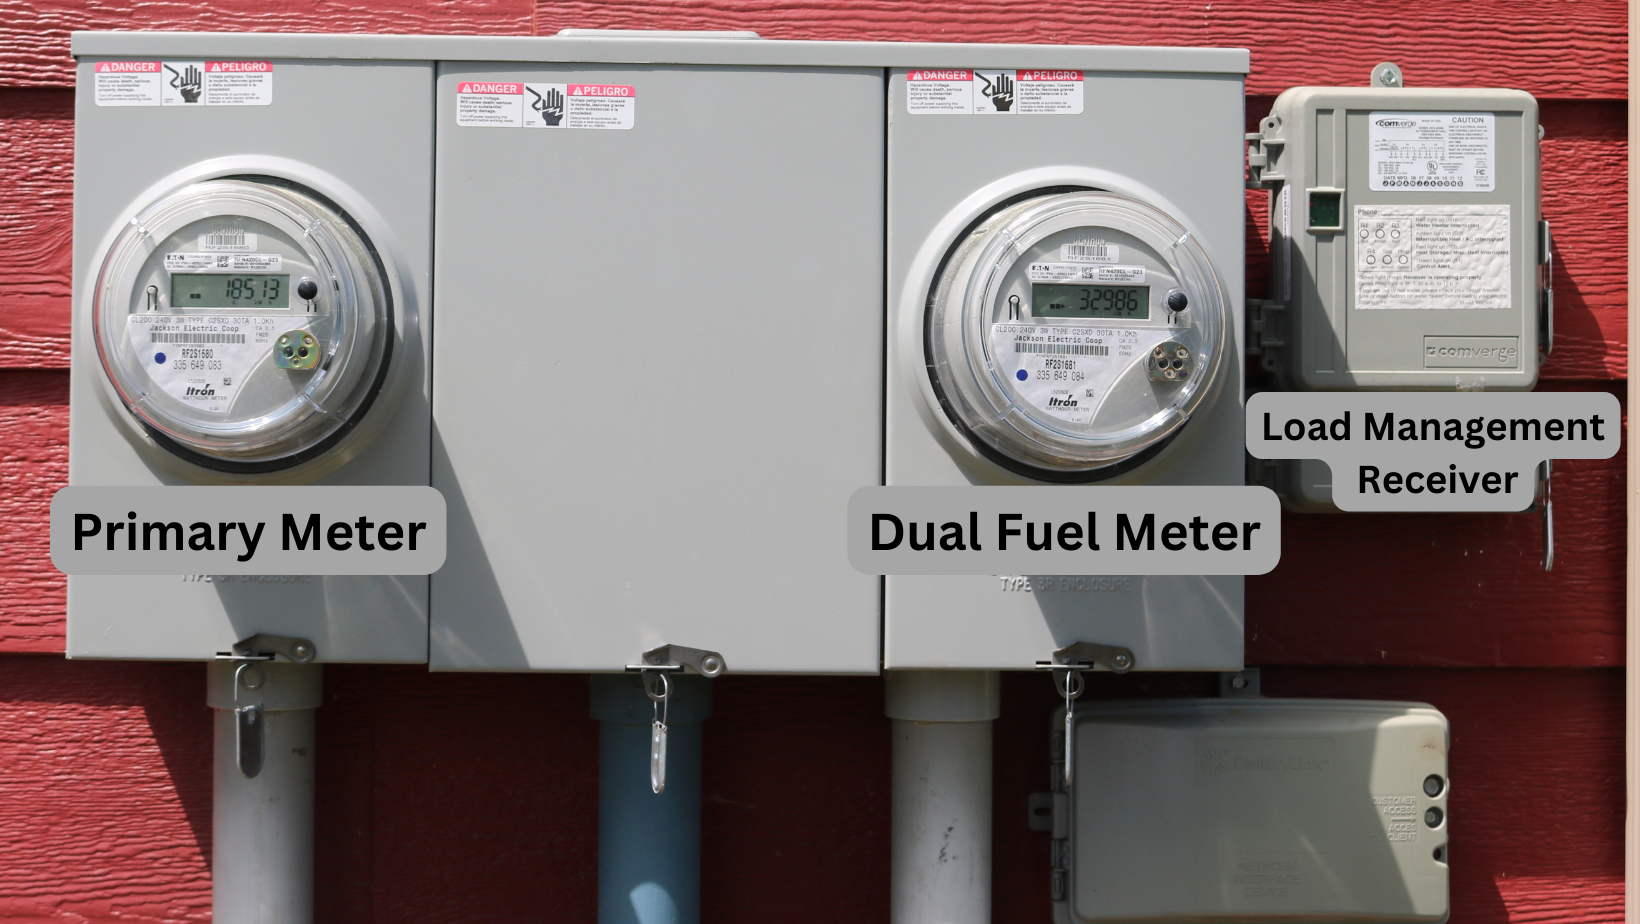 Dual Fuel Meter Explanation